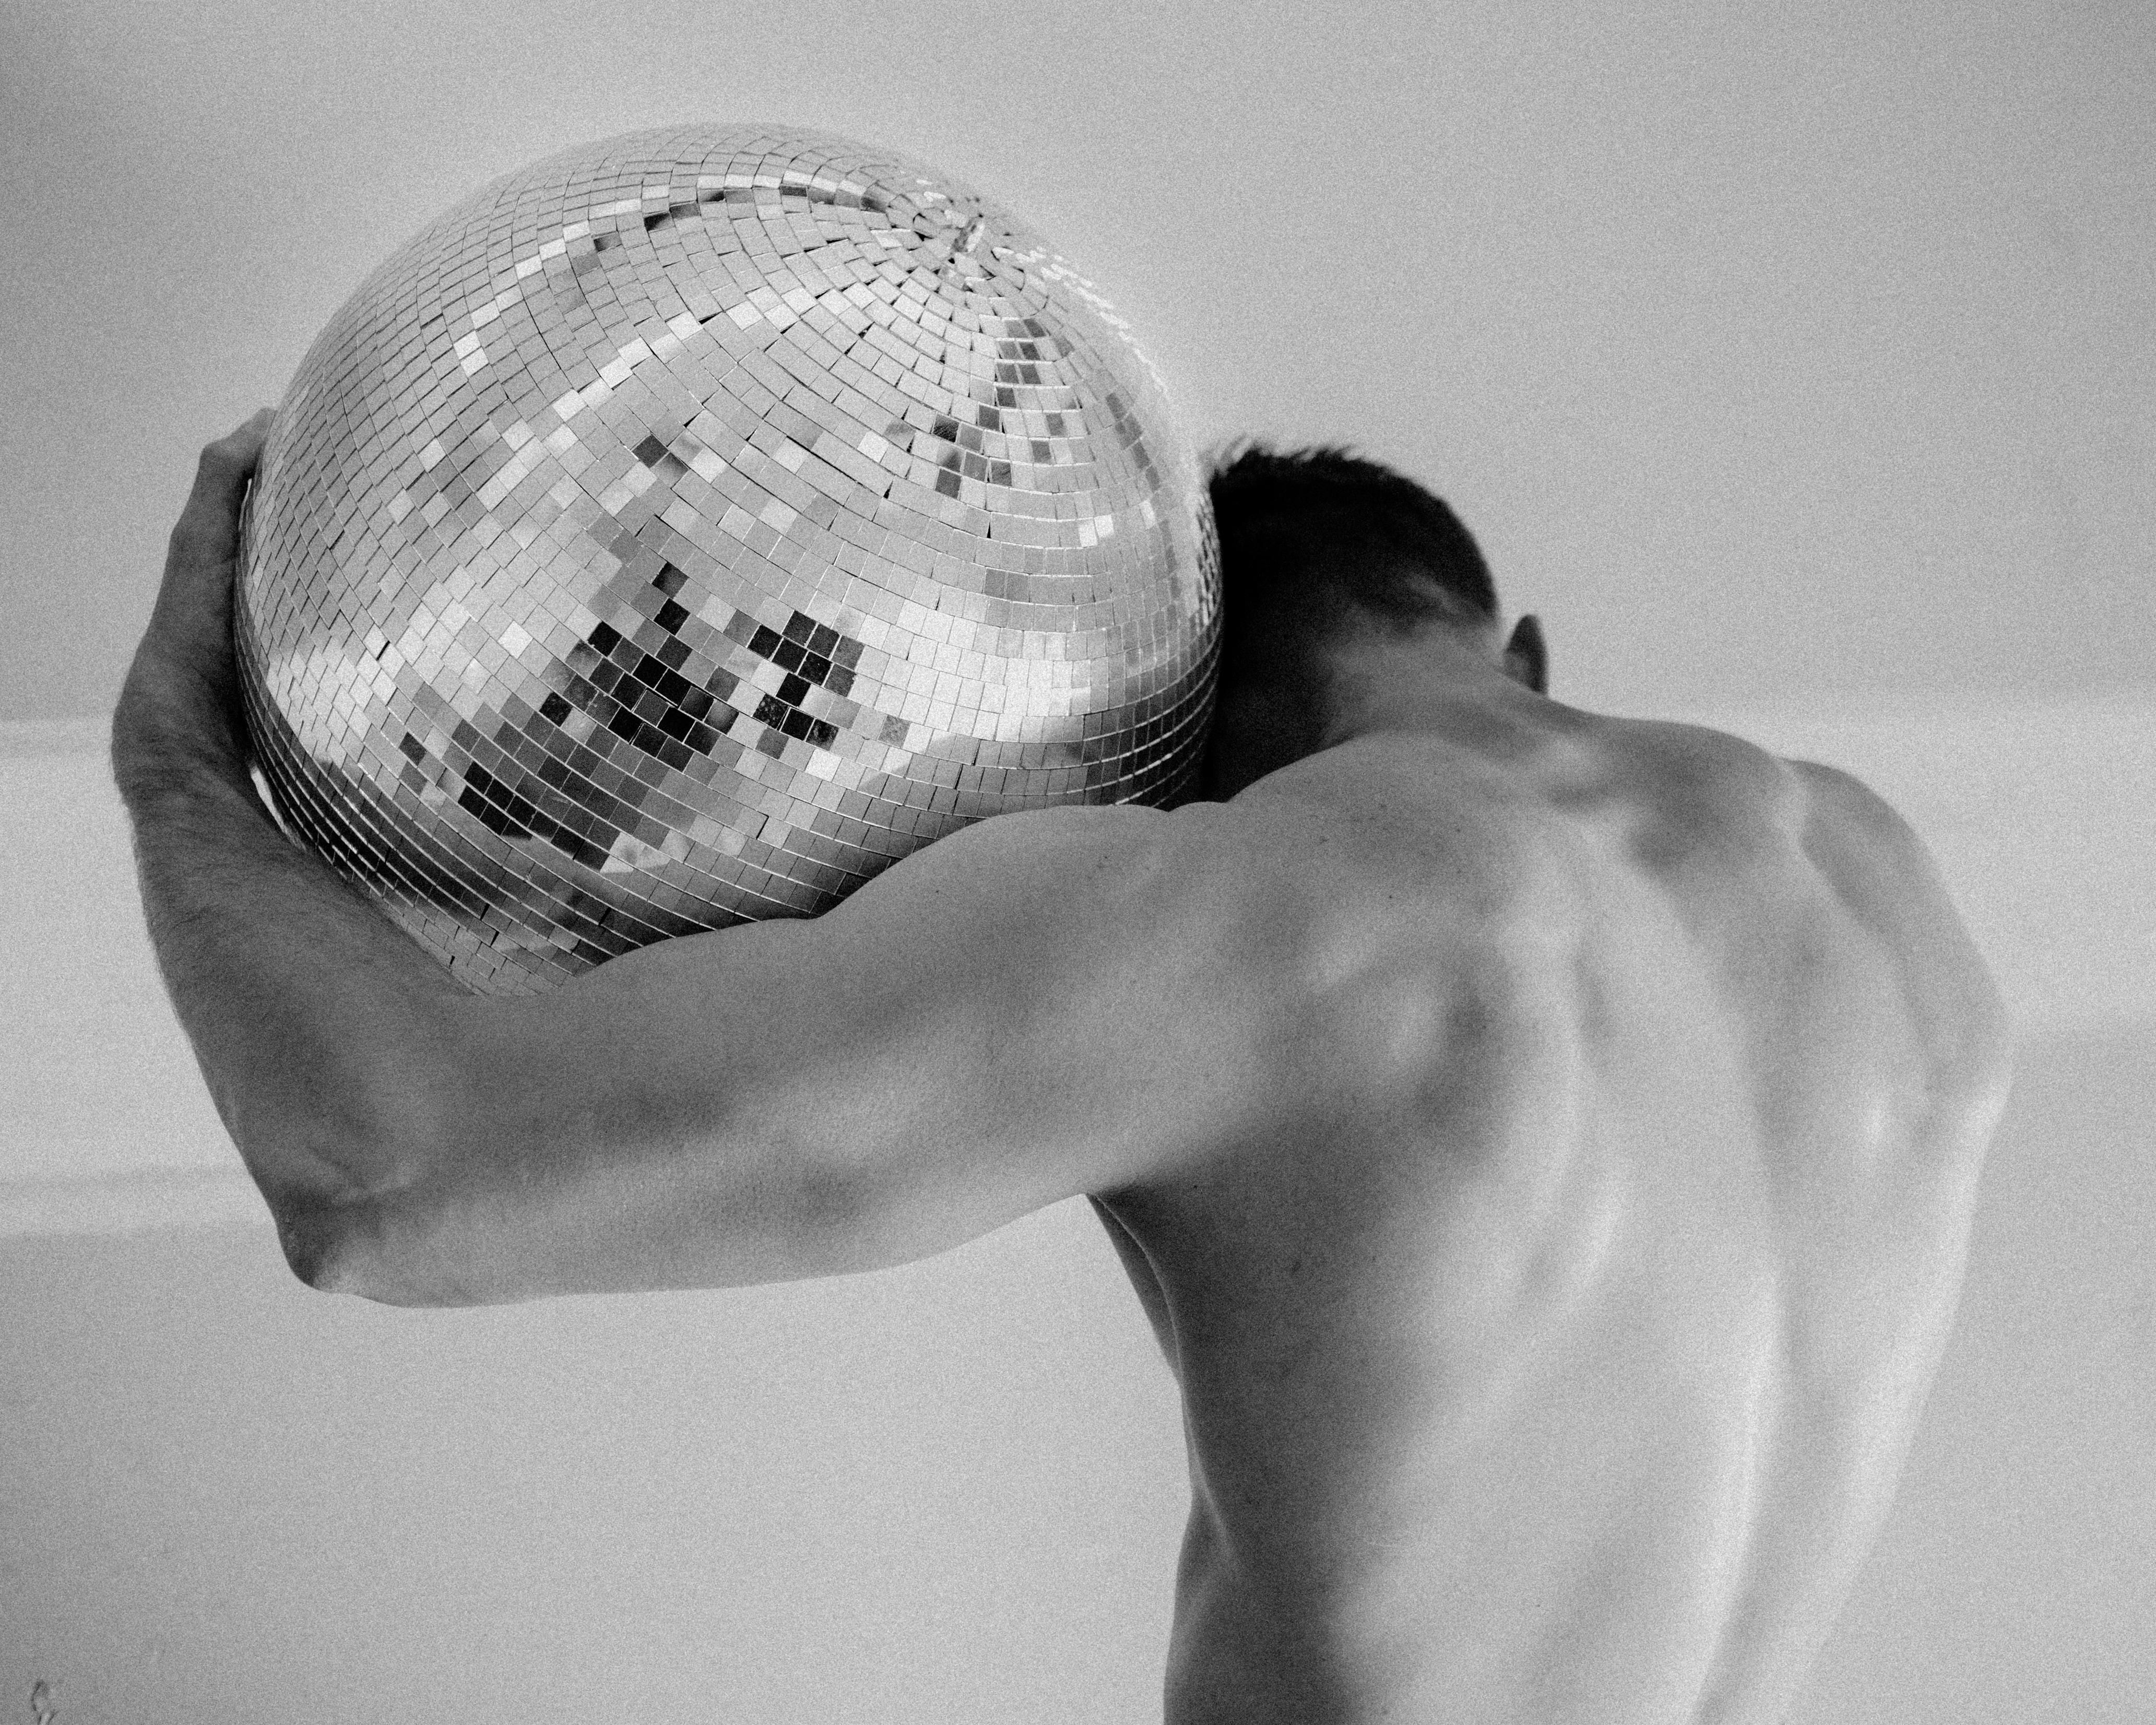 David Pugh Figurative Photograph – Disco Atlas (Disco-Kugel, Schwarz-Weiß, Atlas, männliche Figur, glänzend, Gym, Workout)